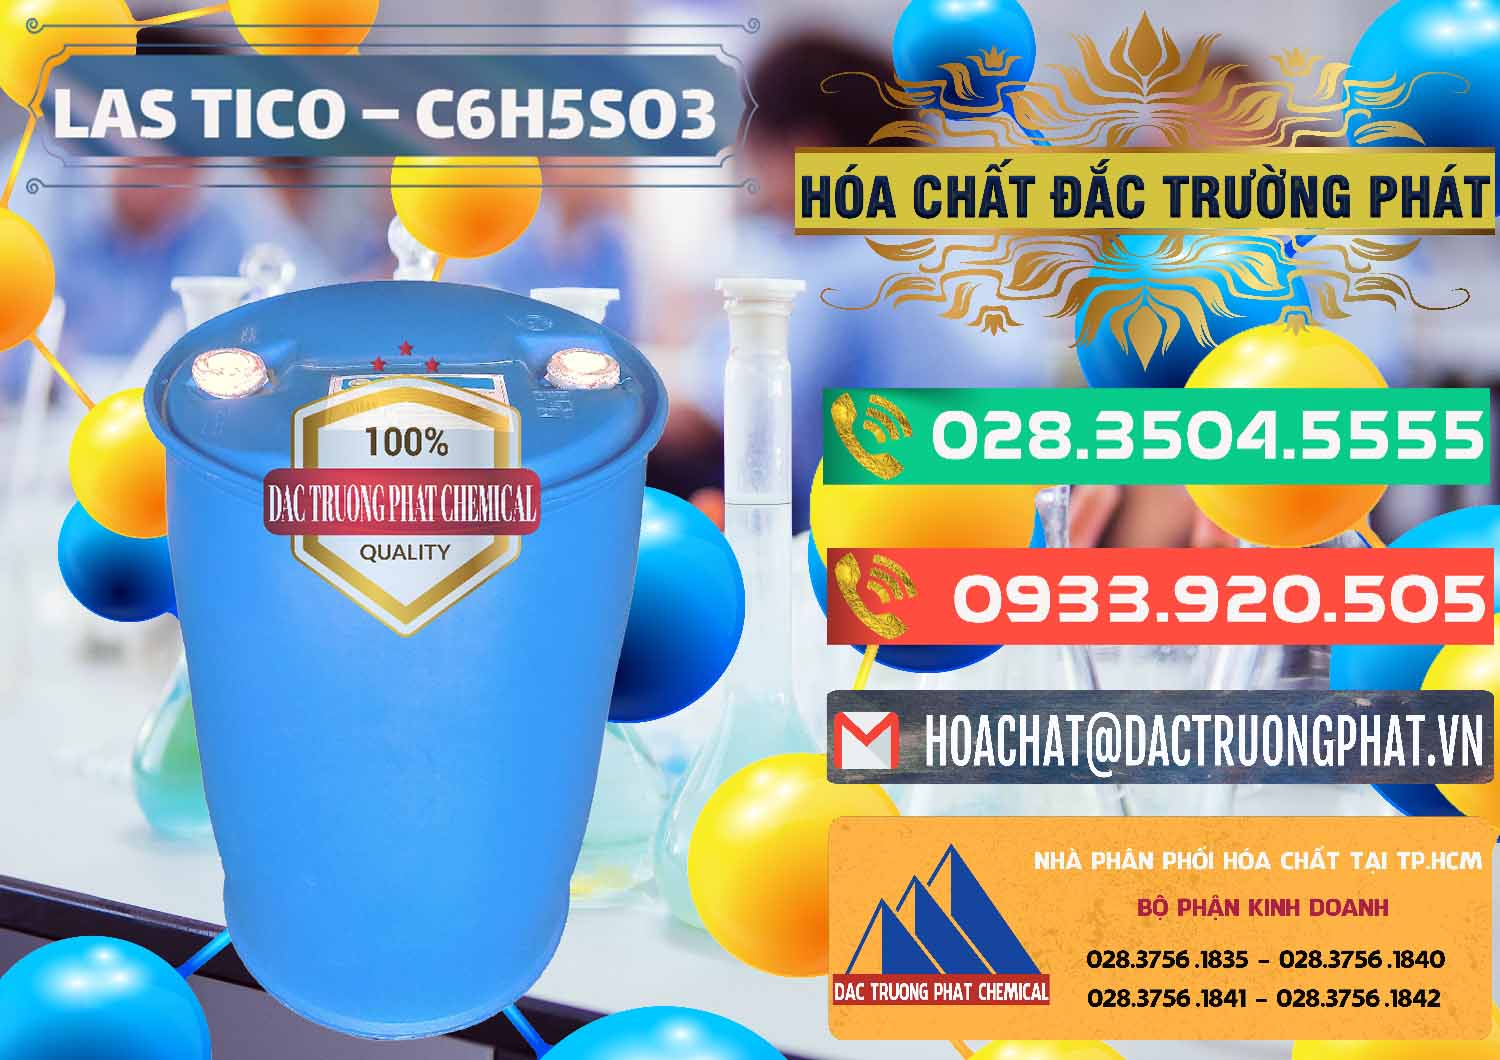 Nơi chuyên bán _ cung cấp Chất tạo bọt Las H Tico Việt Nam - 0190 - Kinh doanh và bán hóa chất tại TP.HCM - congtyhoachat.com.vn